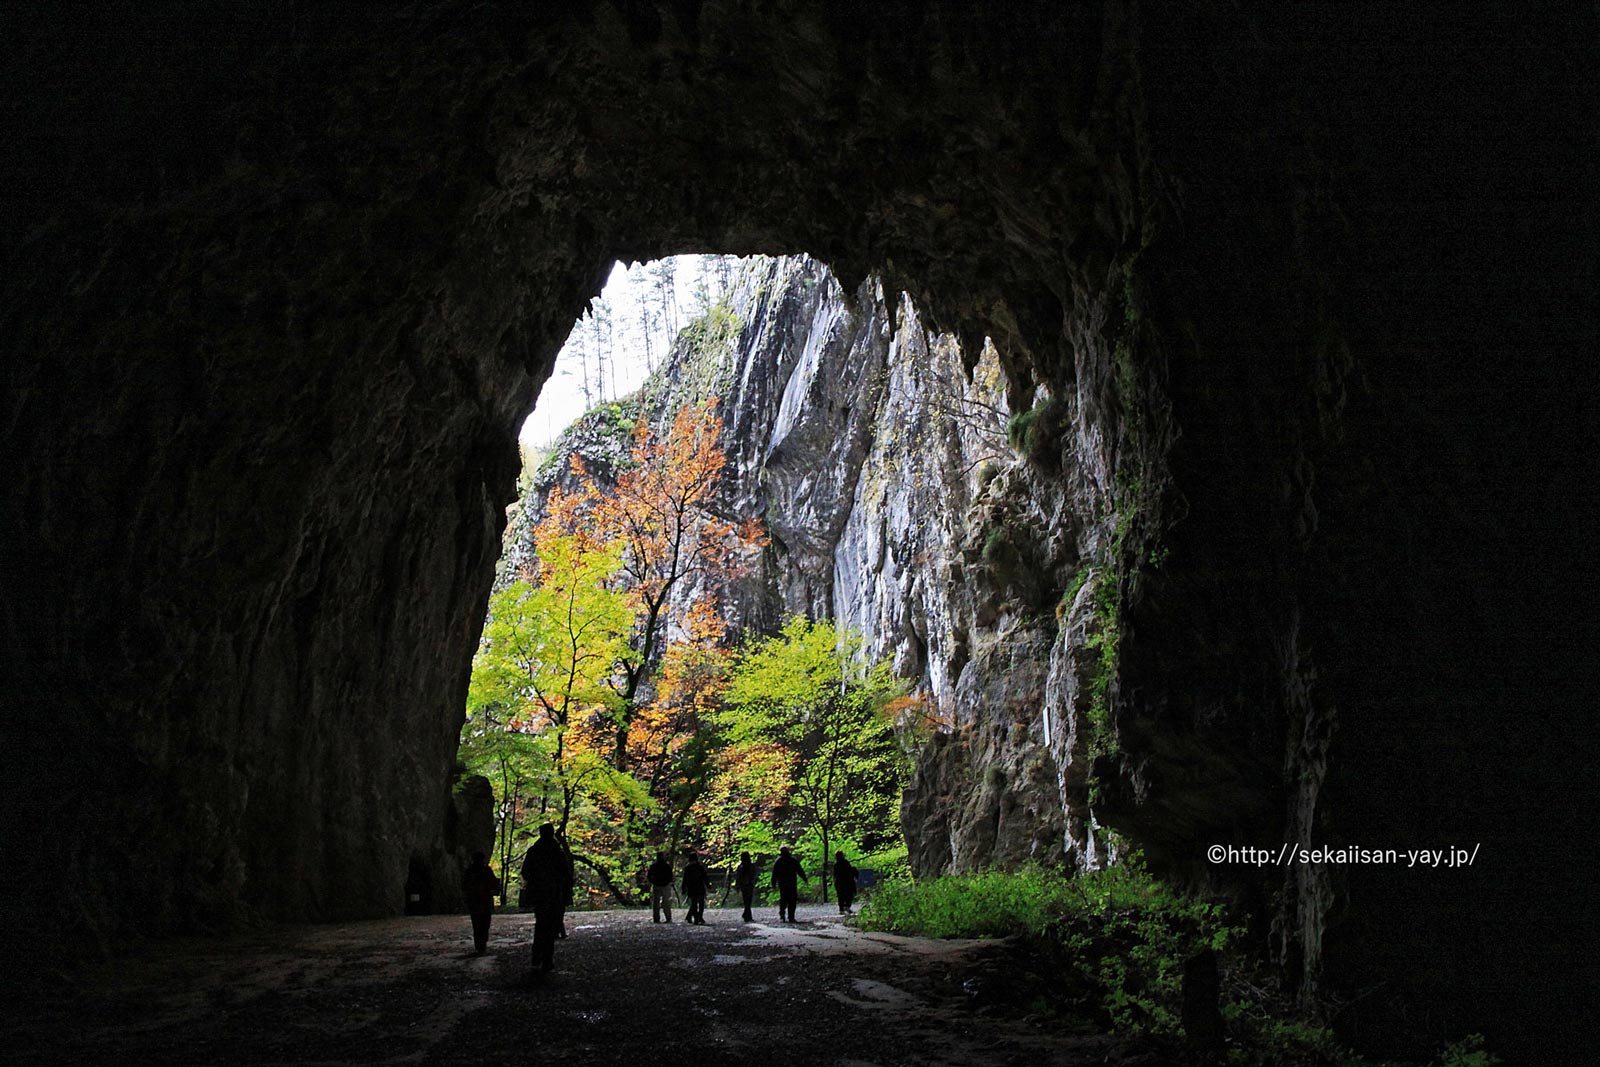 スロベニア「シュコツィアン洞窟群」